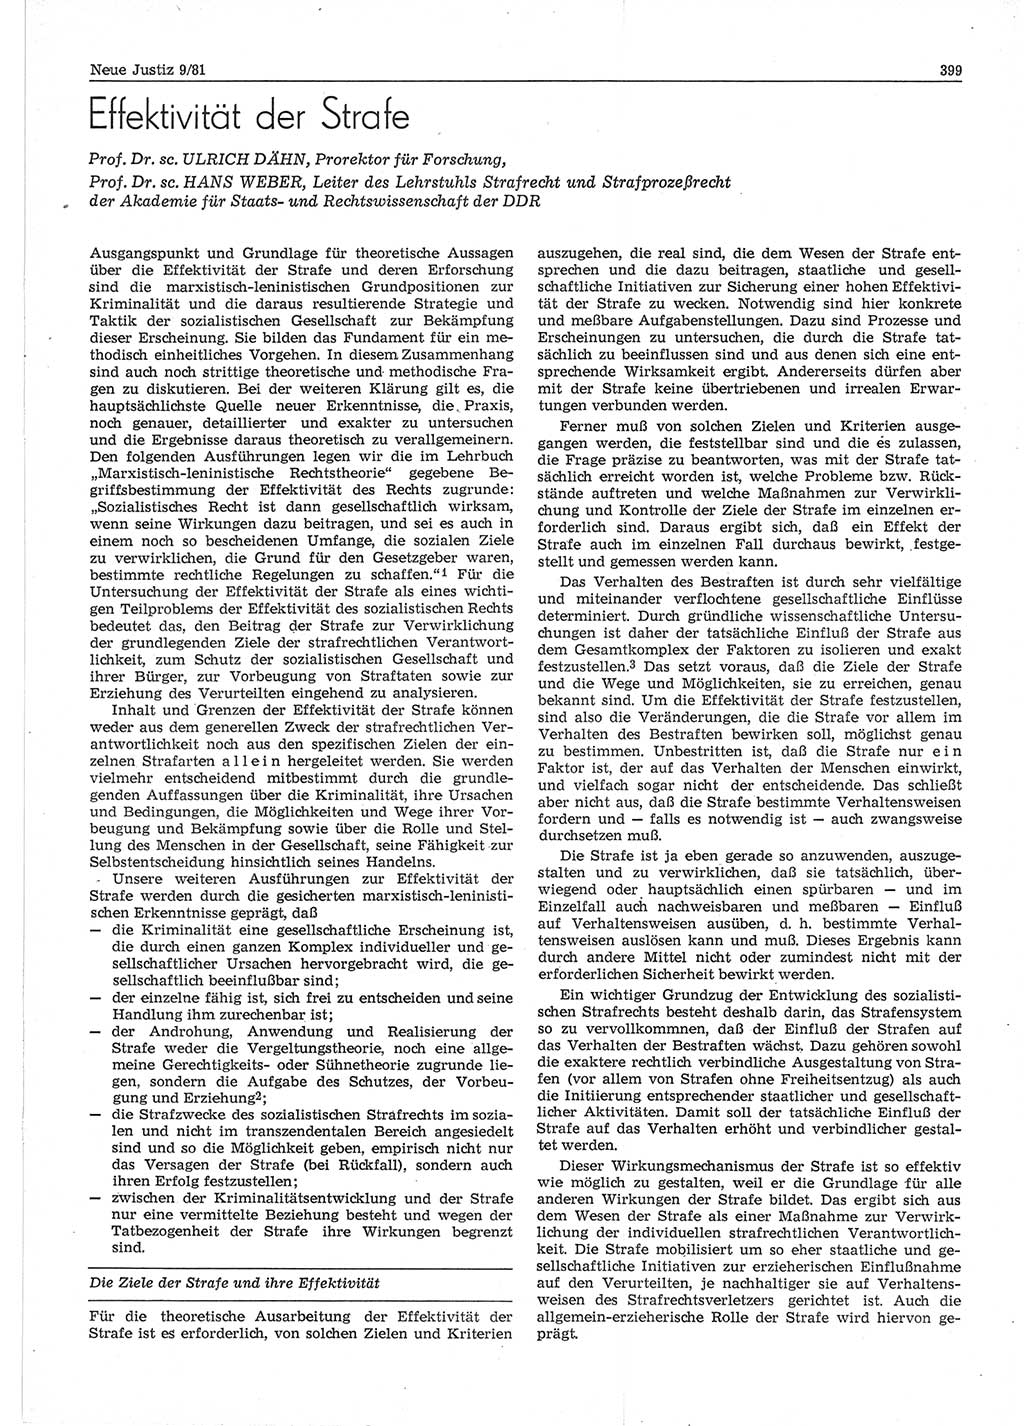 Neue Justiz (NJ), Zeitschrift für sozialistisches Recht und Gesetzlichkeit [Deutsche Demokratische Republik (DDR)], 35. Jahrgang 1981, Seite 399 (NJ DDR 1981, S. 399)